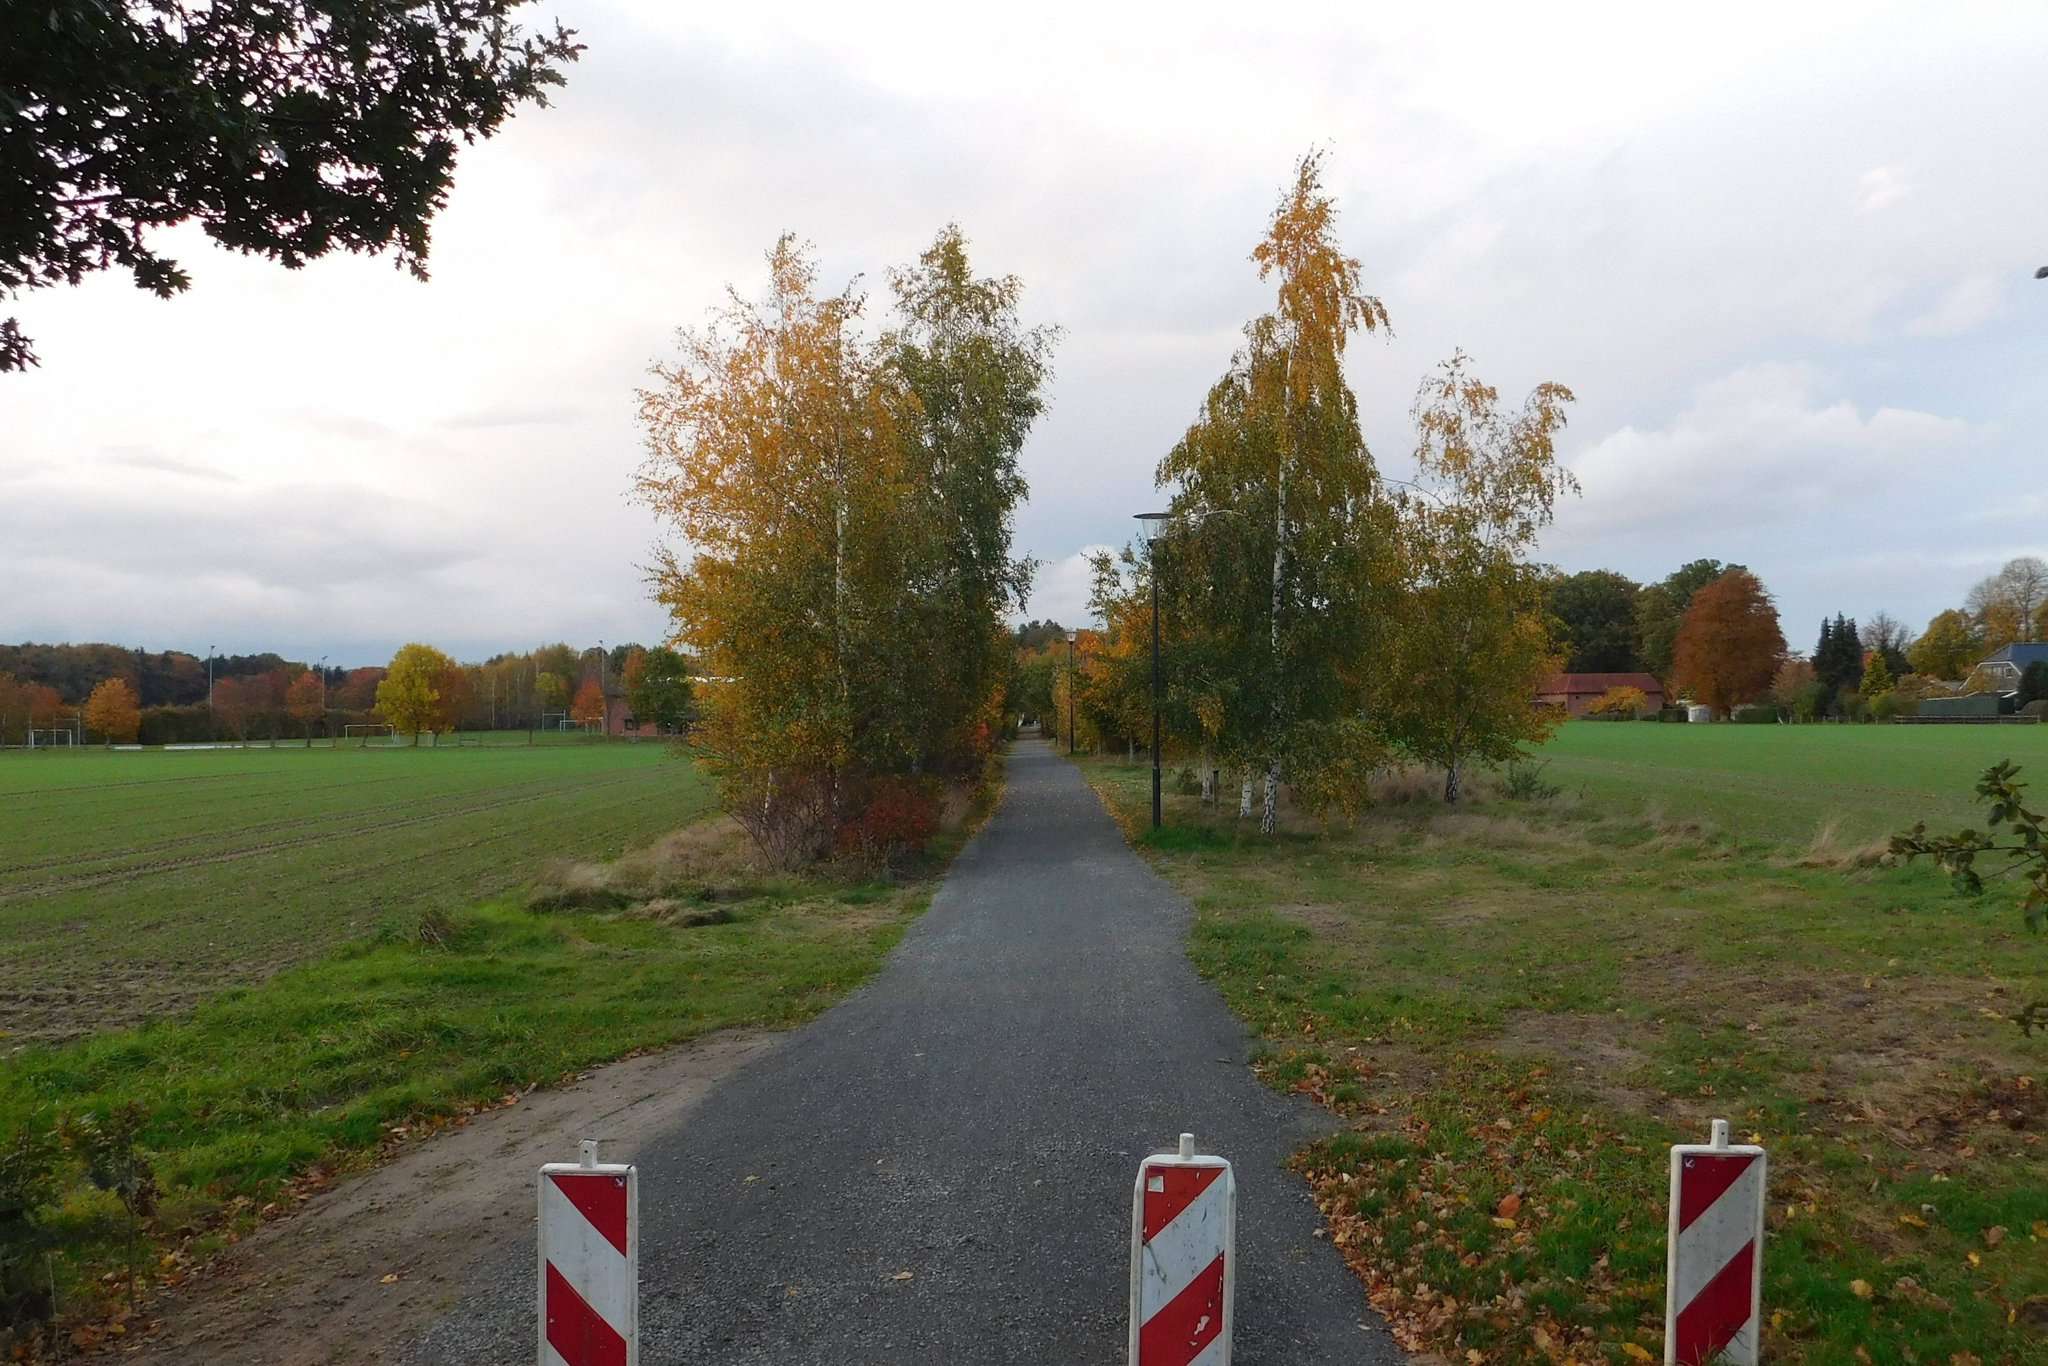 Die Mitglieder des Rates der Gemeinde Bötersen einigten sich auf den Standort für ein neues Baugebiet. Der Schulweg soll erhalten bleiben.